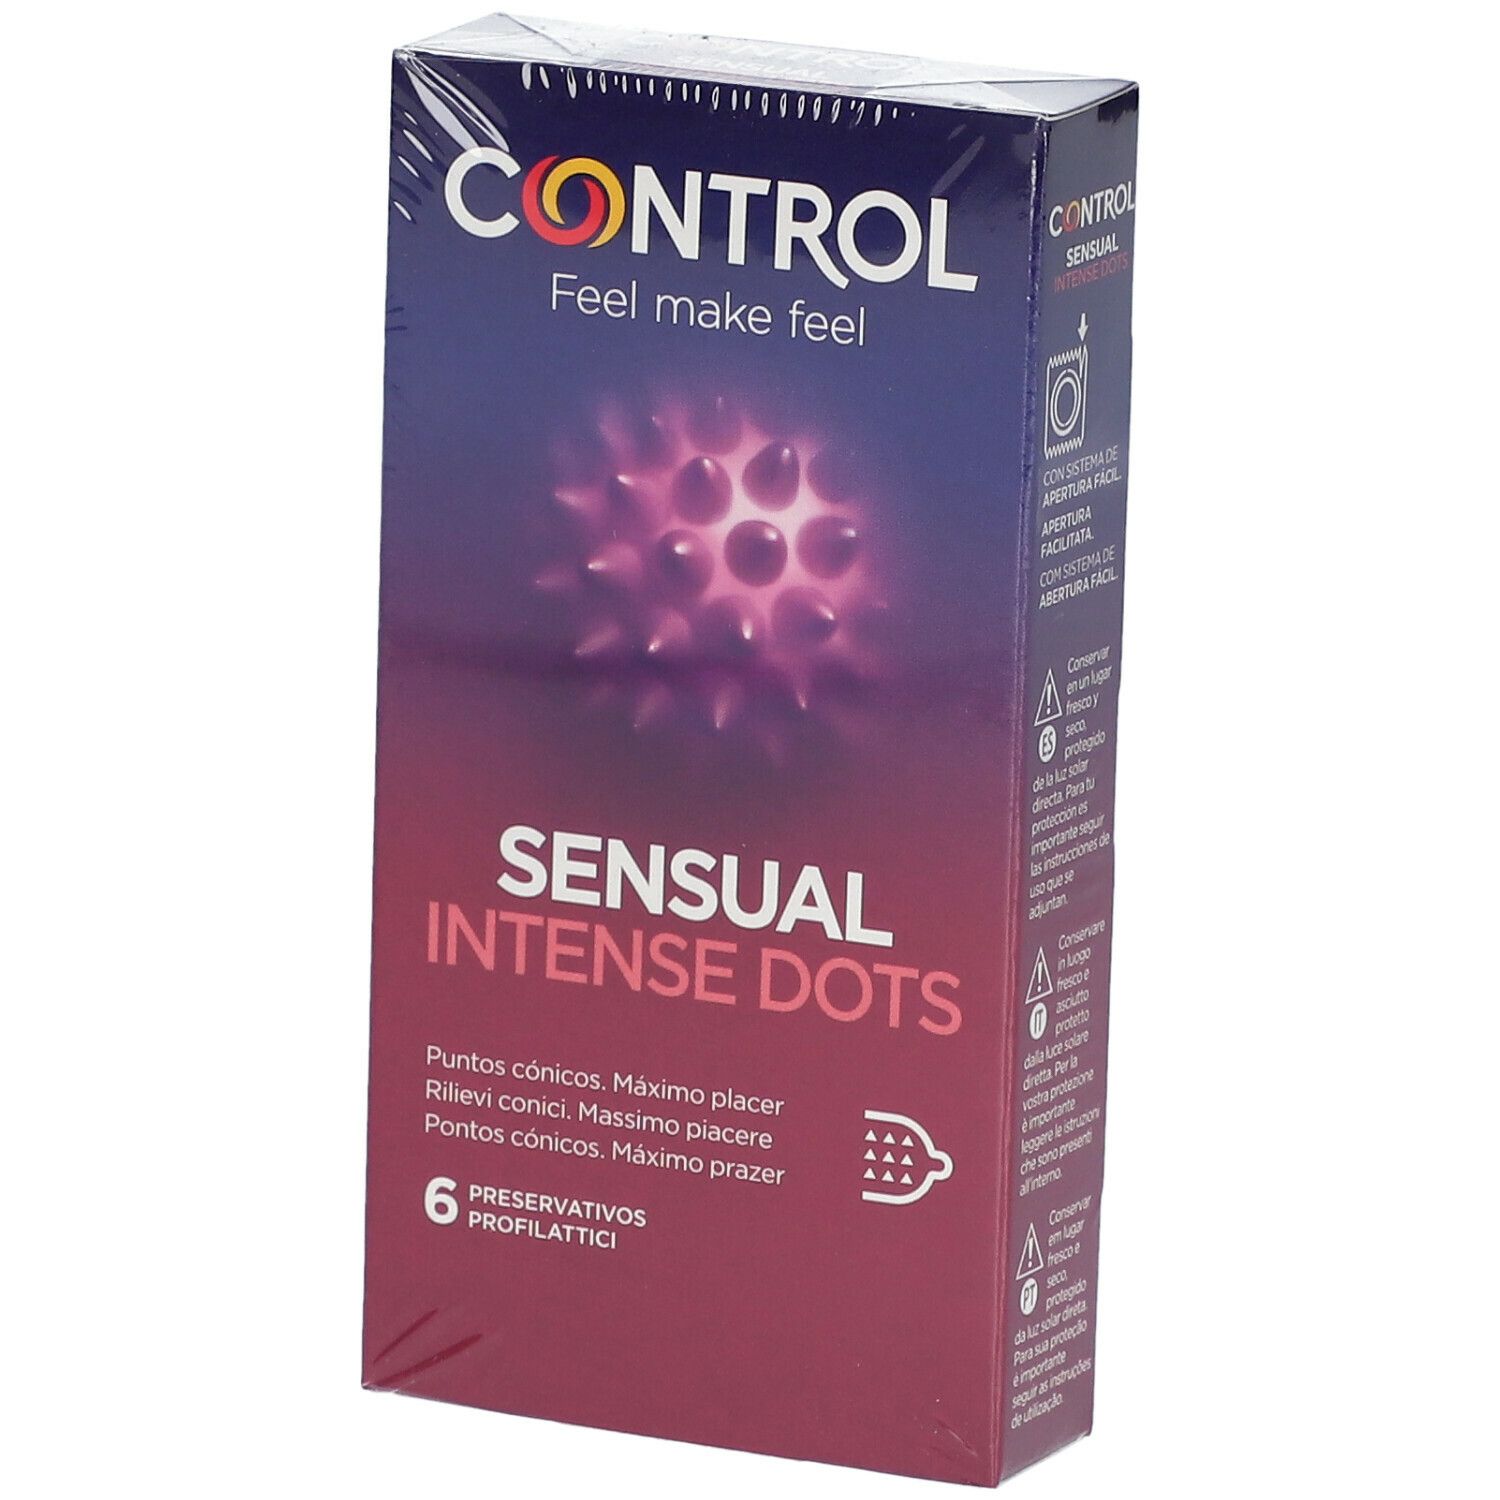 CONTROL Sensual Intense Dots